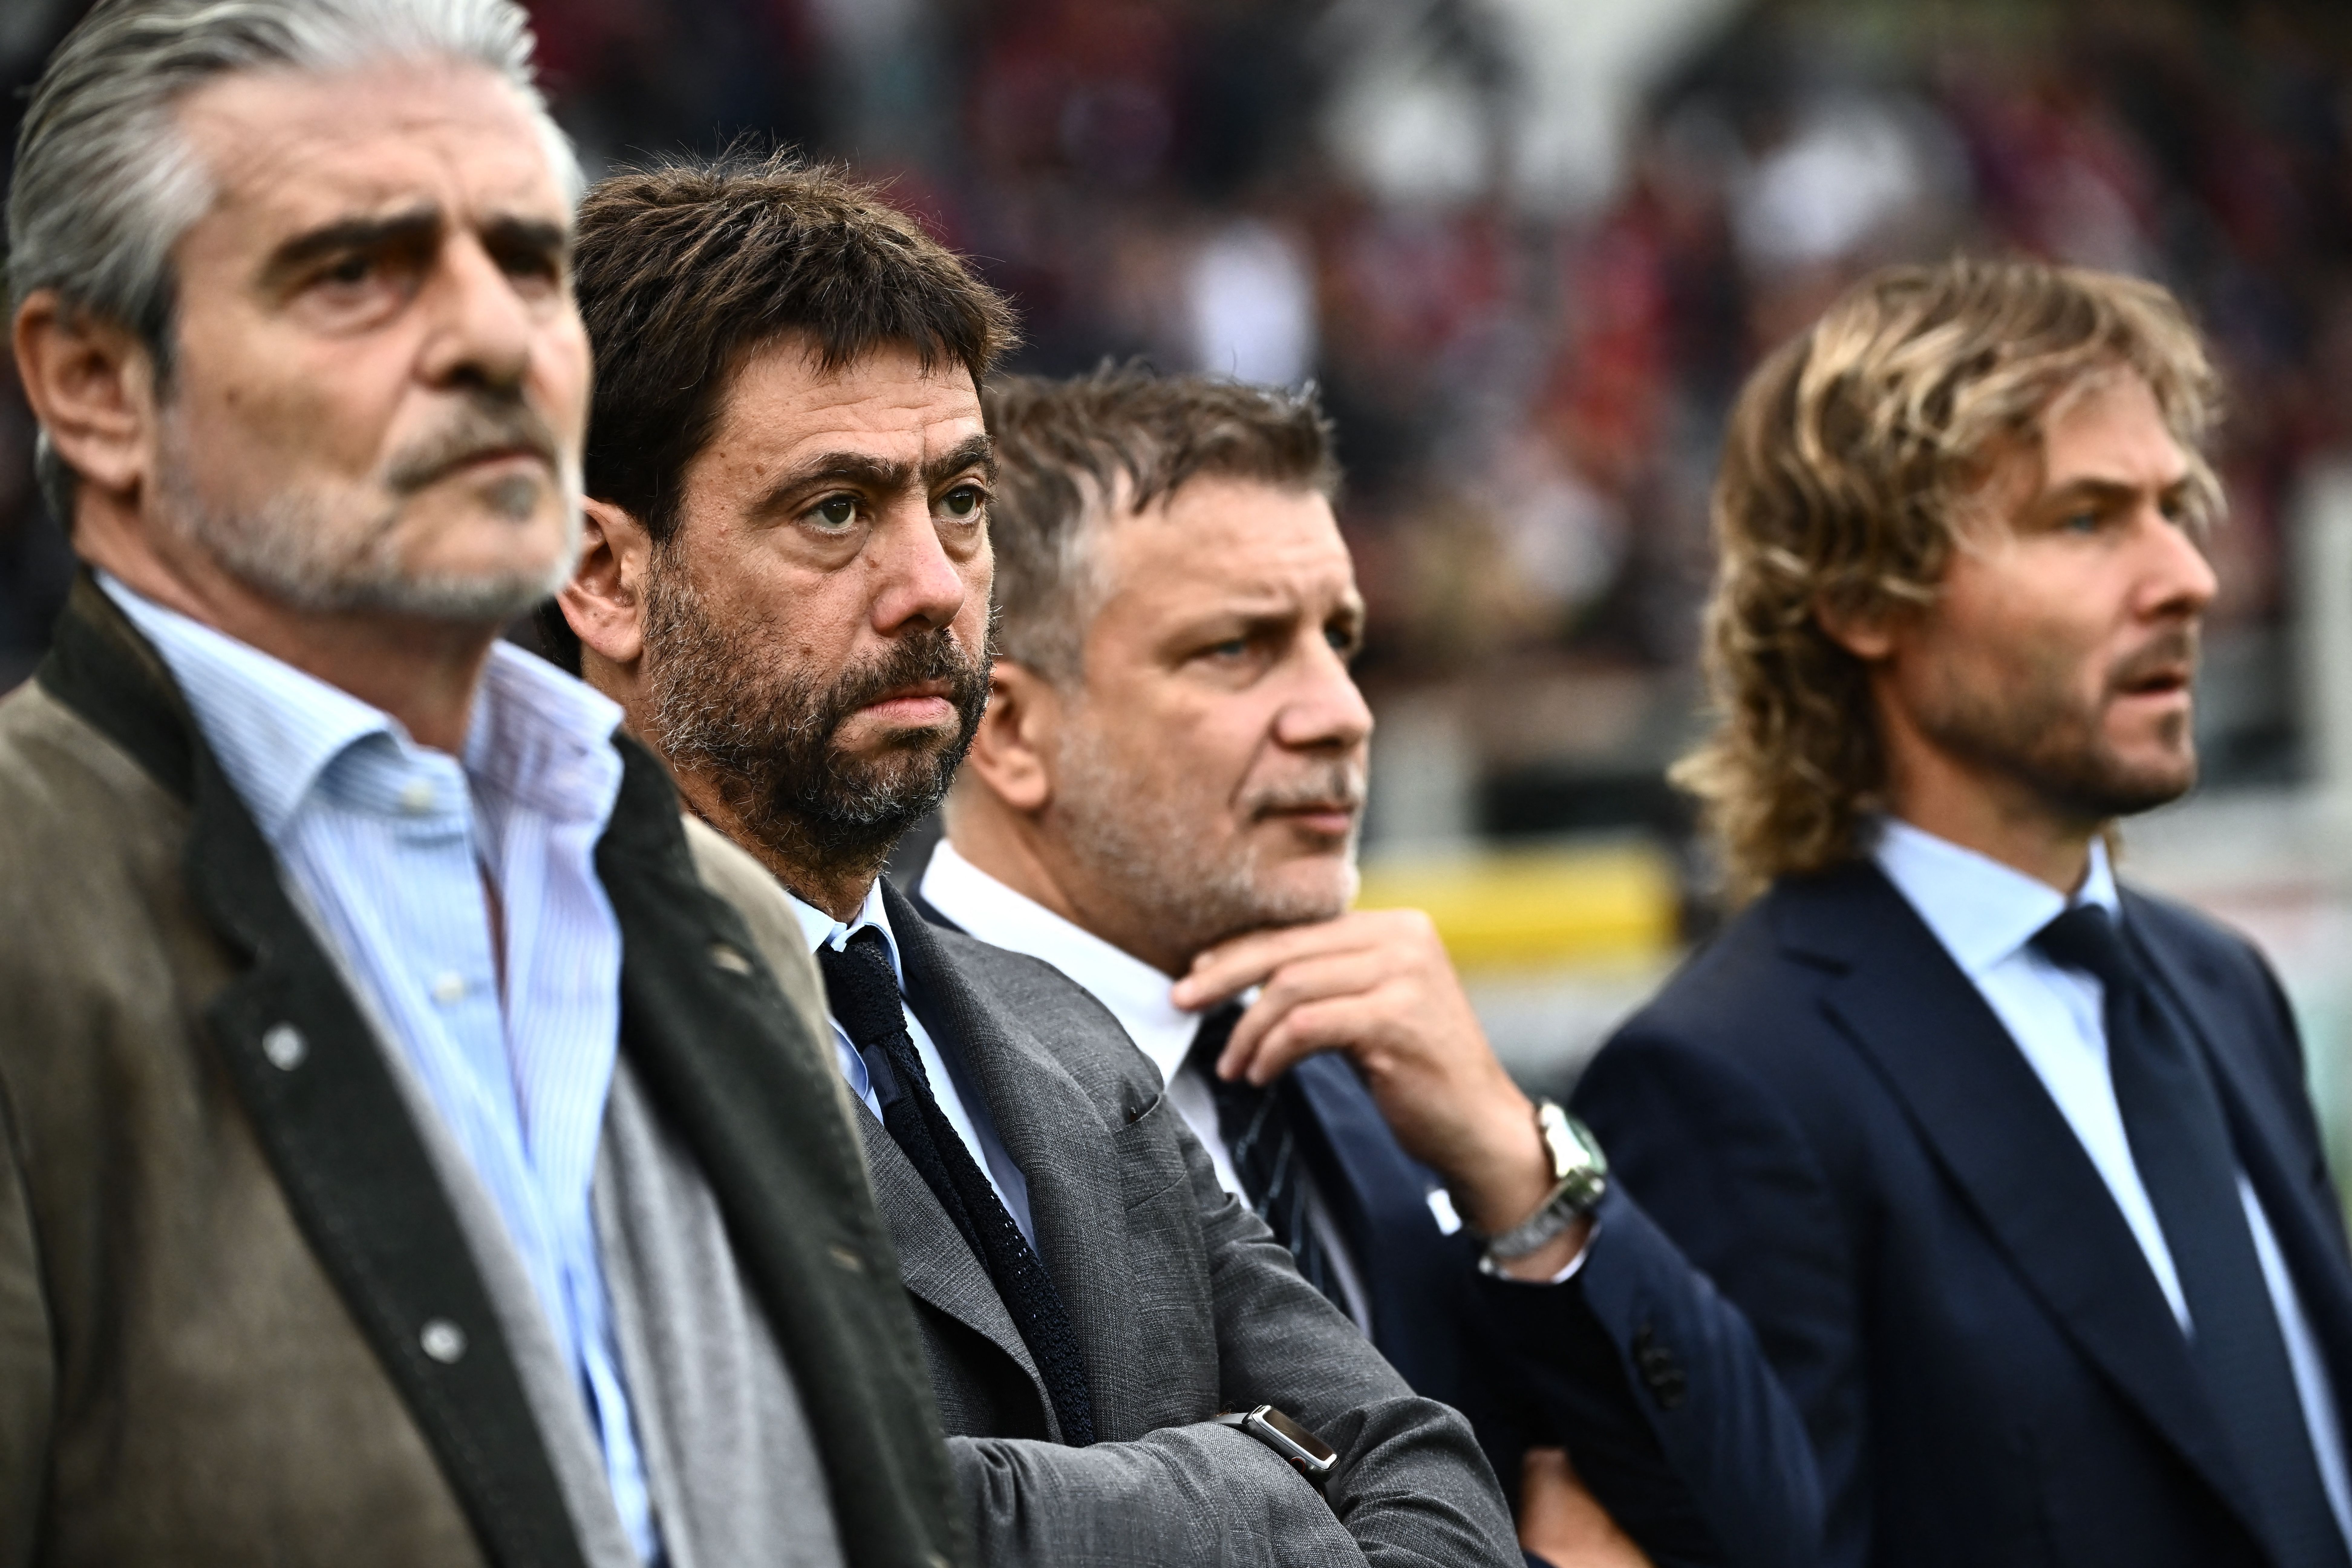 Serie B: Parma and Reggina docked points - Football Italia